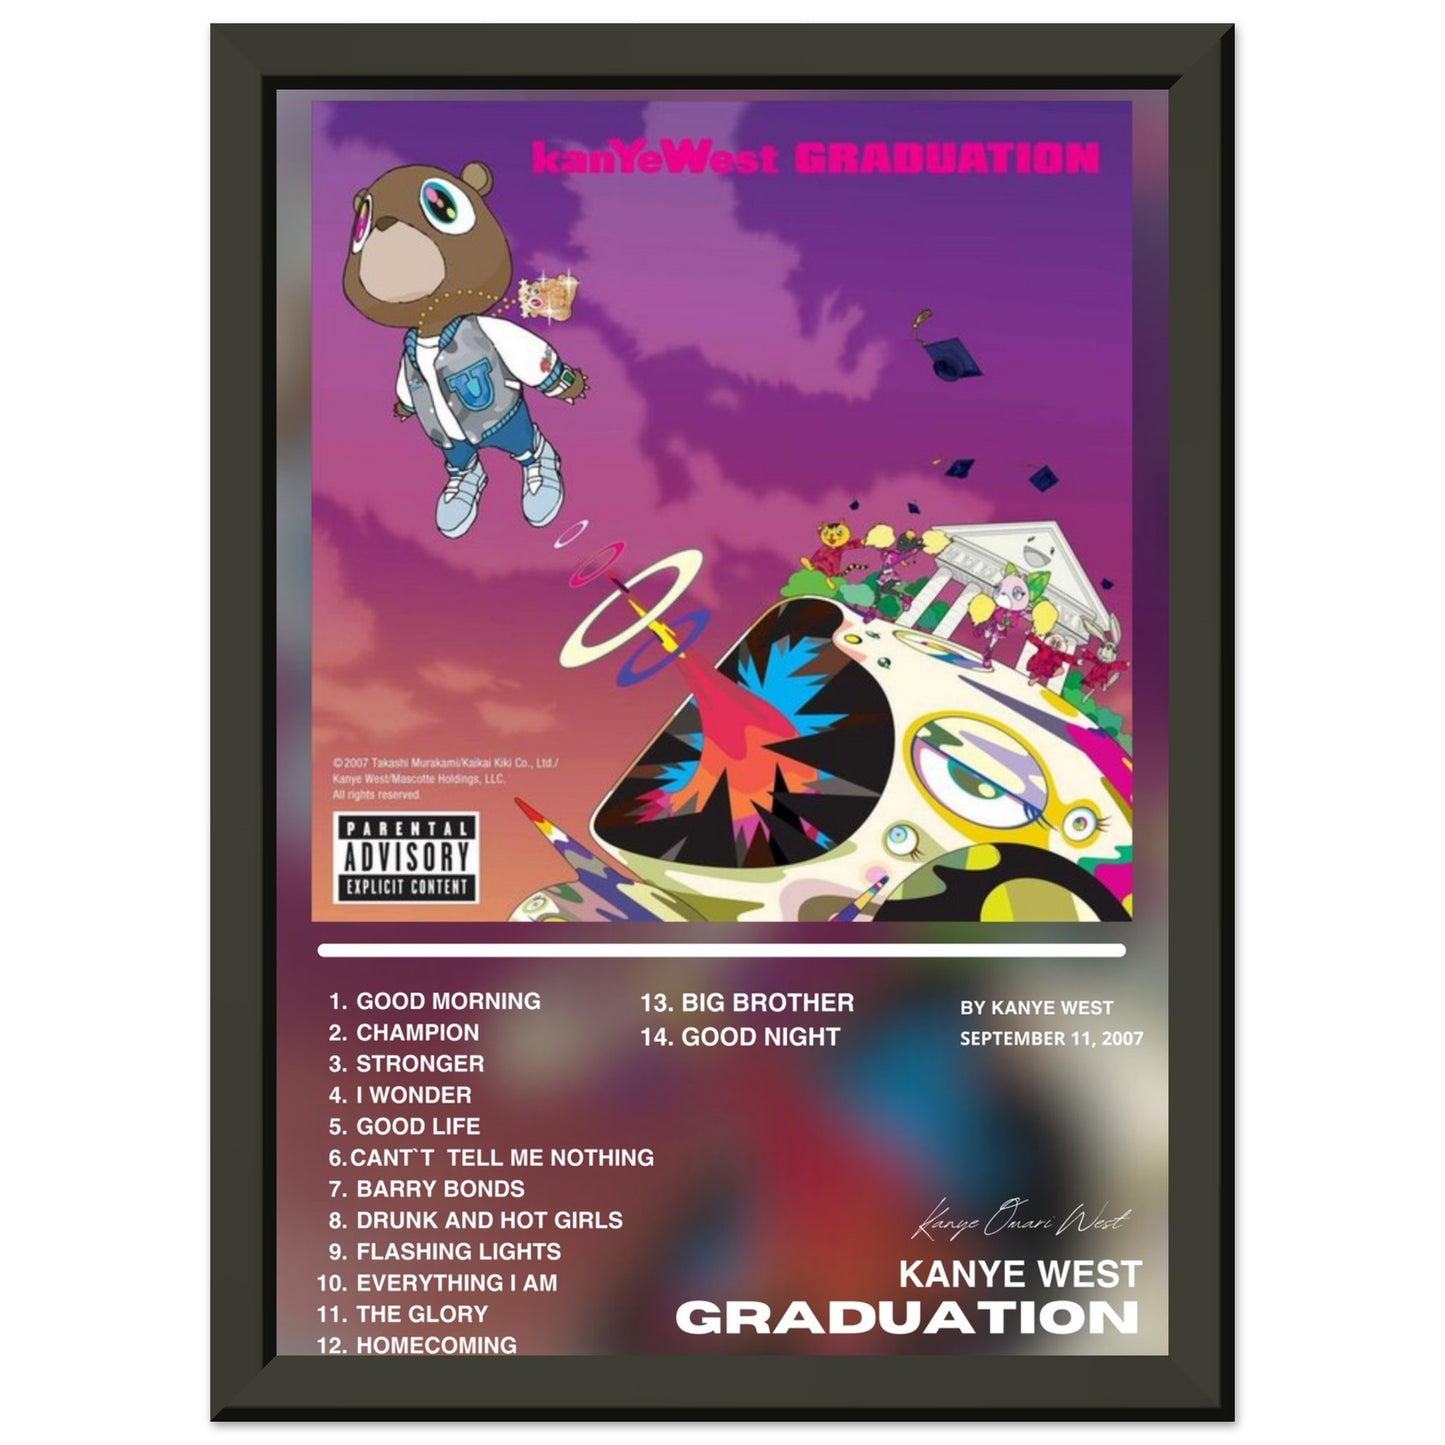 Kanye West "Graduation"